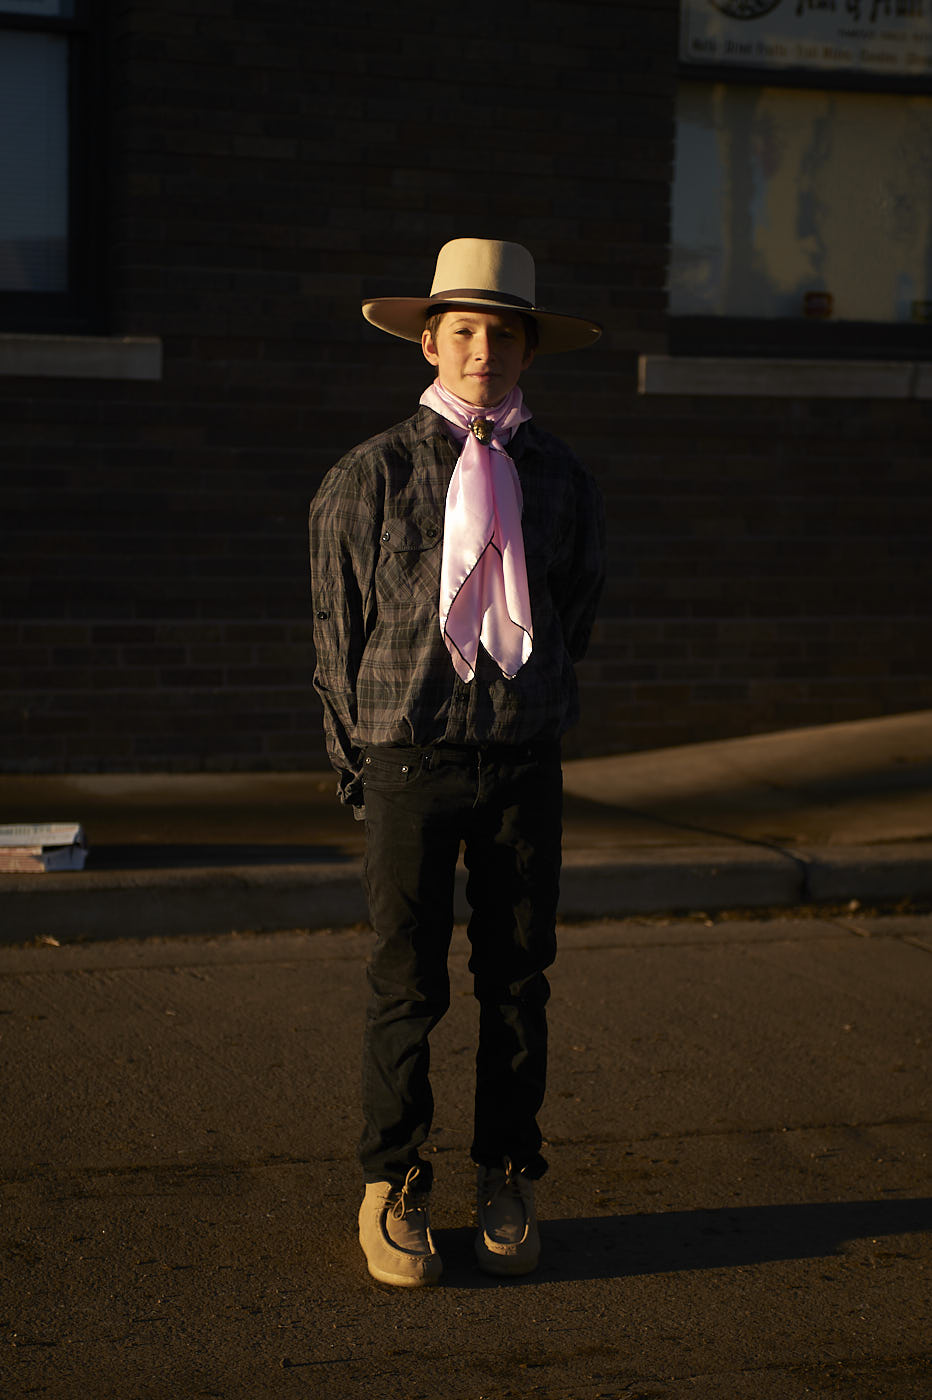 029-boy-with-cowboy-hat-smiling-portrait